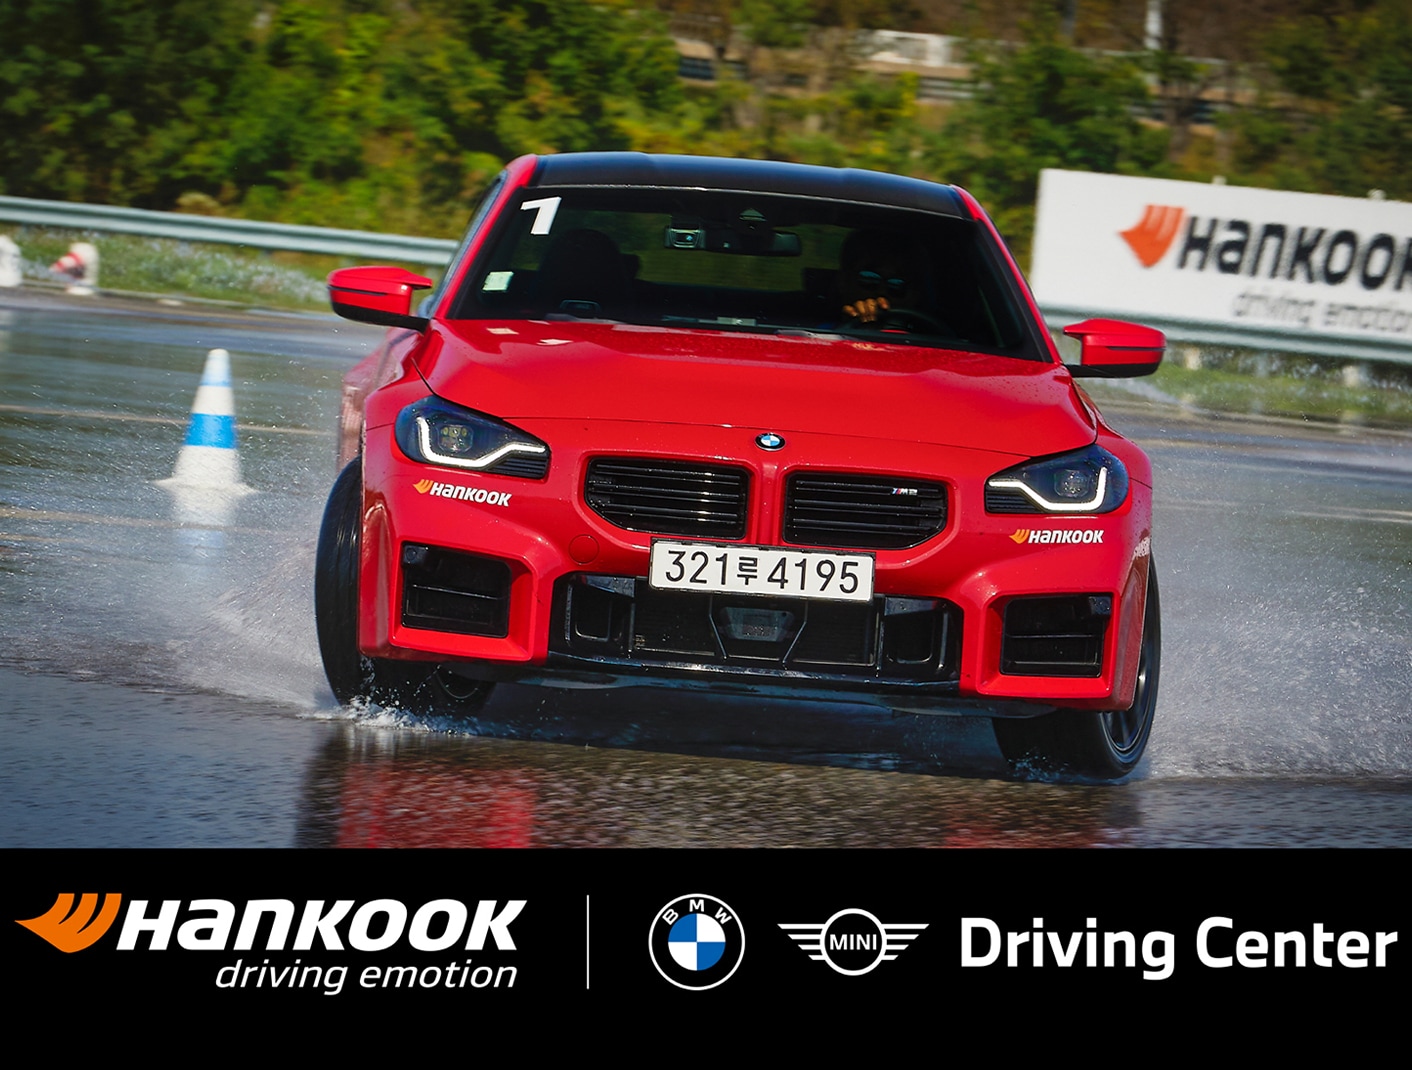 Hankook Tire celebra 10 años como proveedor exclusivo de neumáticos de alto rendimiento para el Centro de Conducción de BMW.